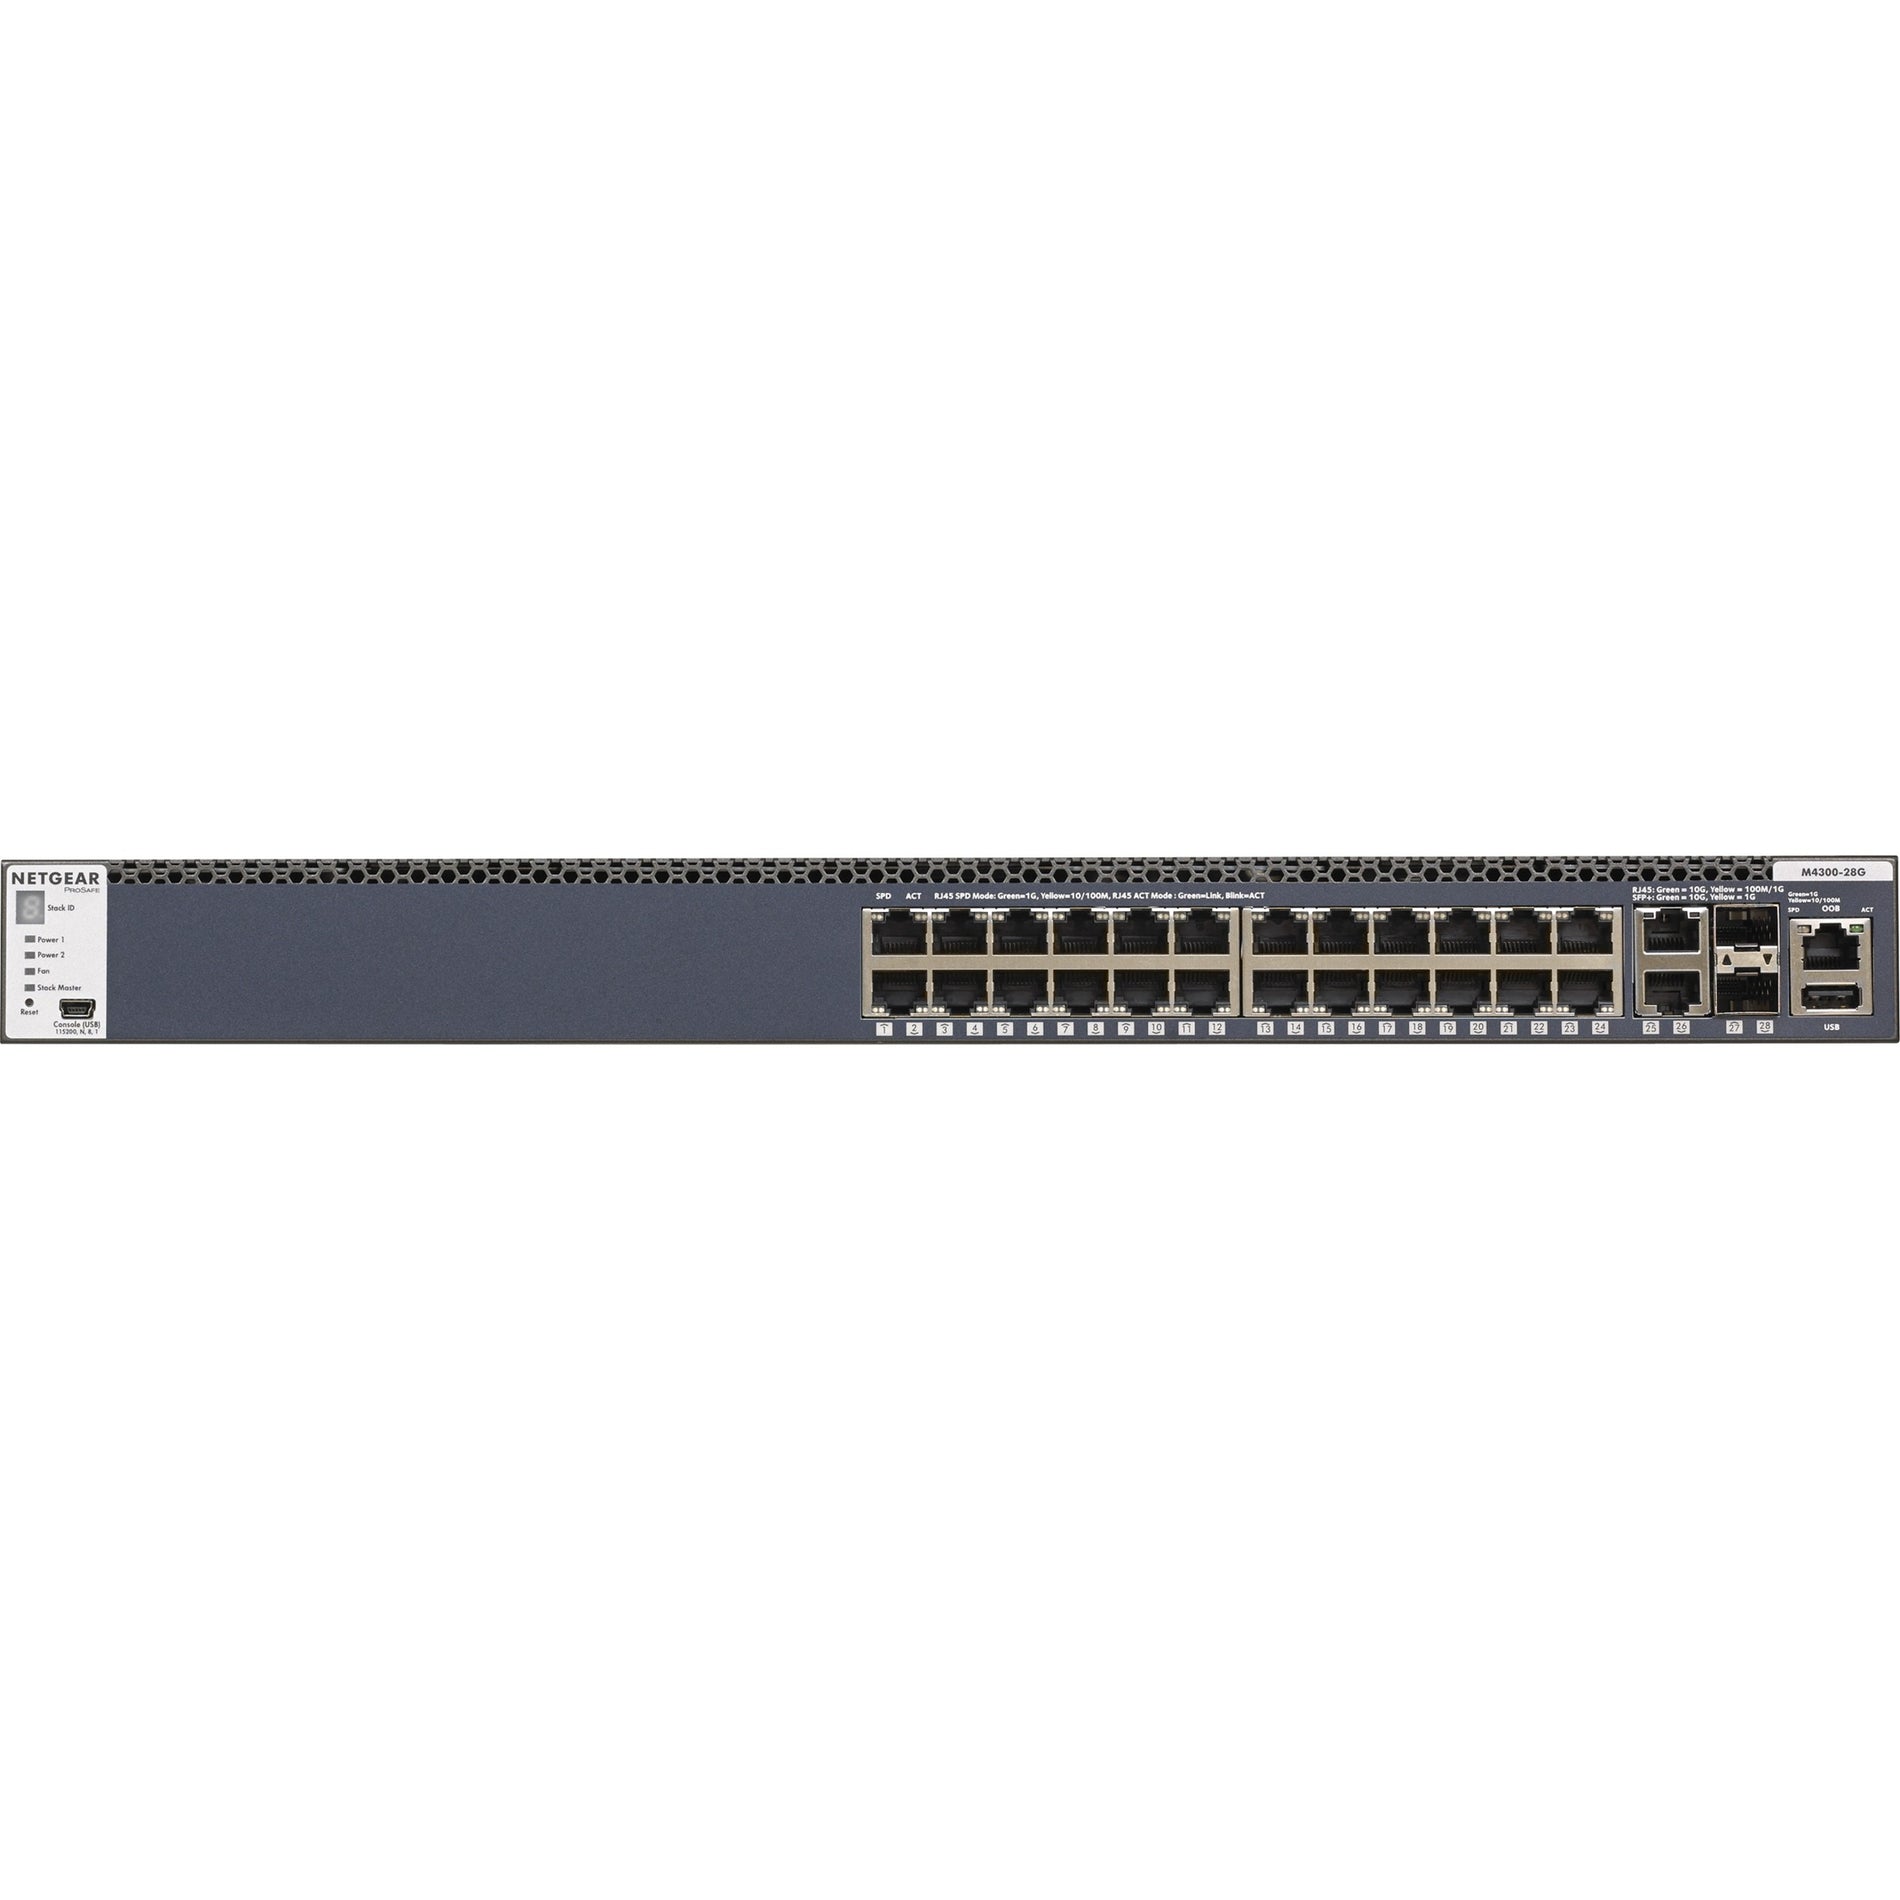 شبكية جي إس إم 4328 أس 100NES - من إم 4300-28 جي بروسيف مدار، 24x1ج ستاكابل، 2x10ق القائمة -تي و 2xSFP+ -، التبديل شامل 3 - الشبكة العلامة التجارية: نيتجير